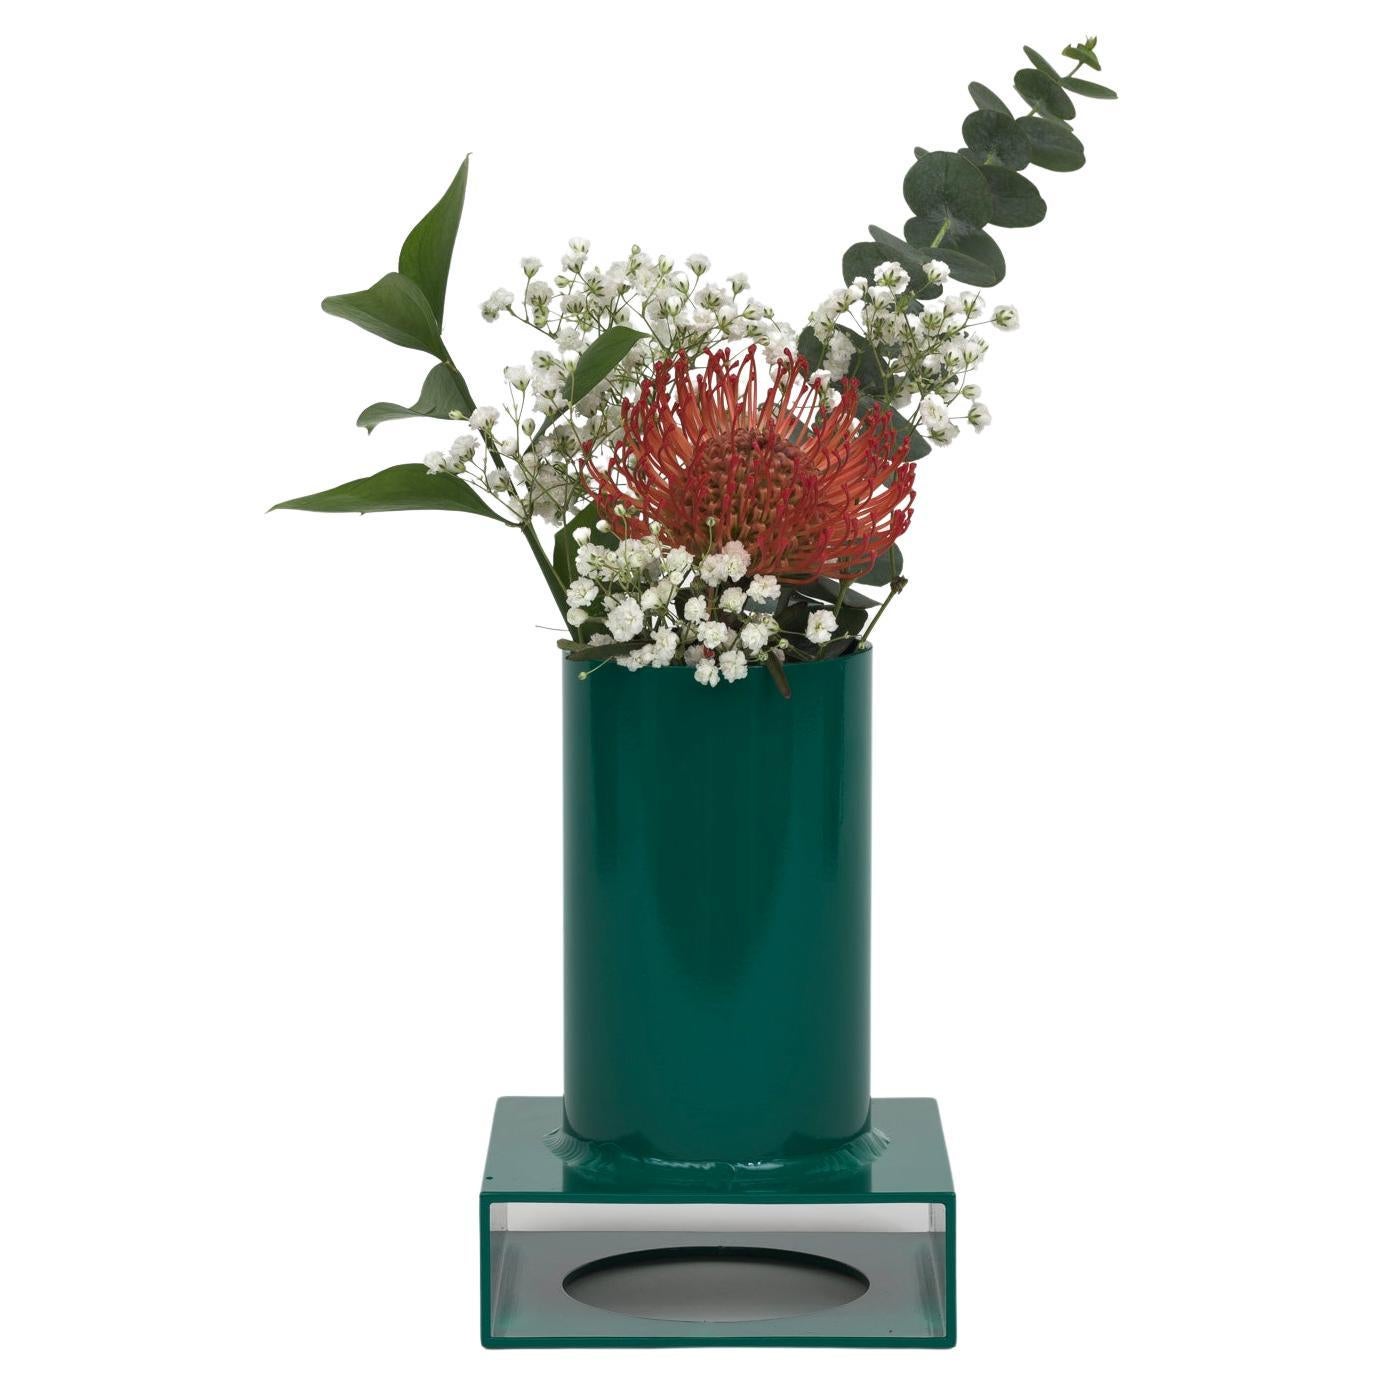 Vase tube Brute 002 en aluminium poudré vert menthe foncé, édition limitée